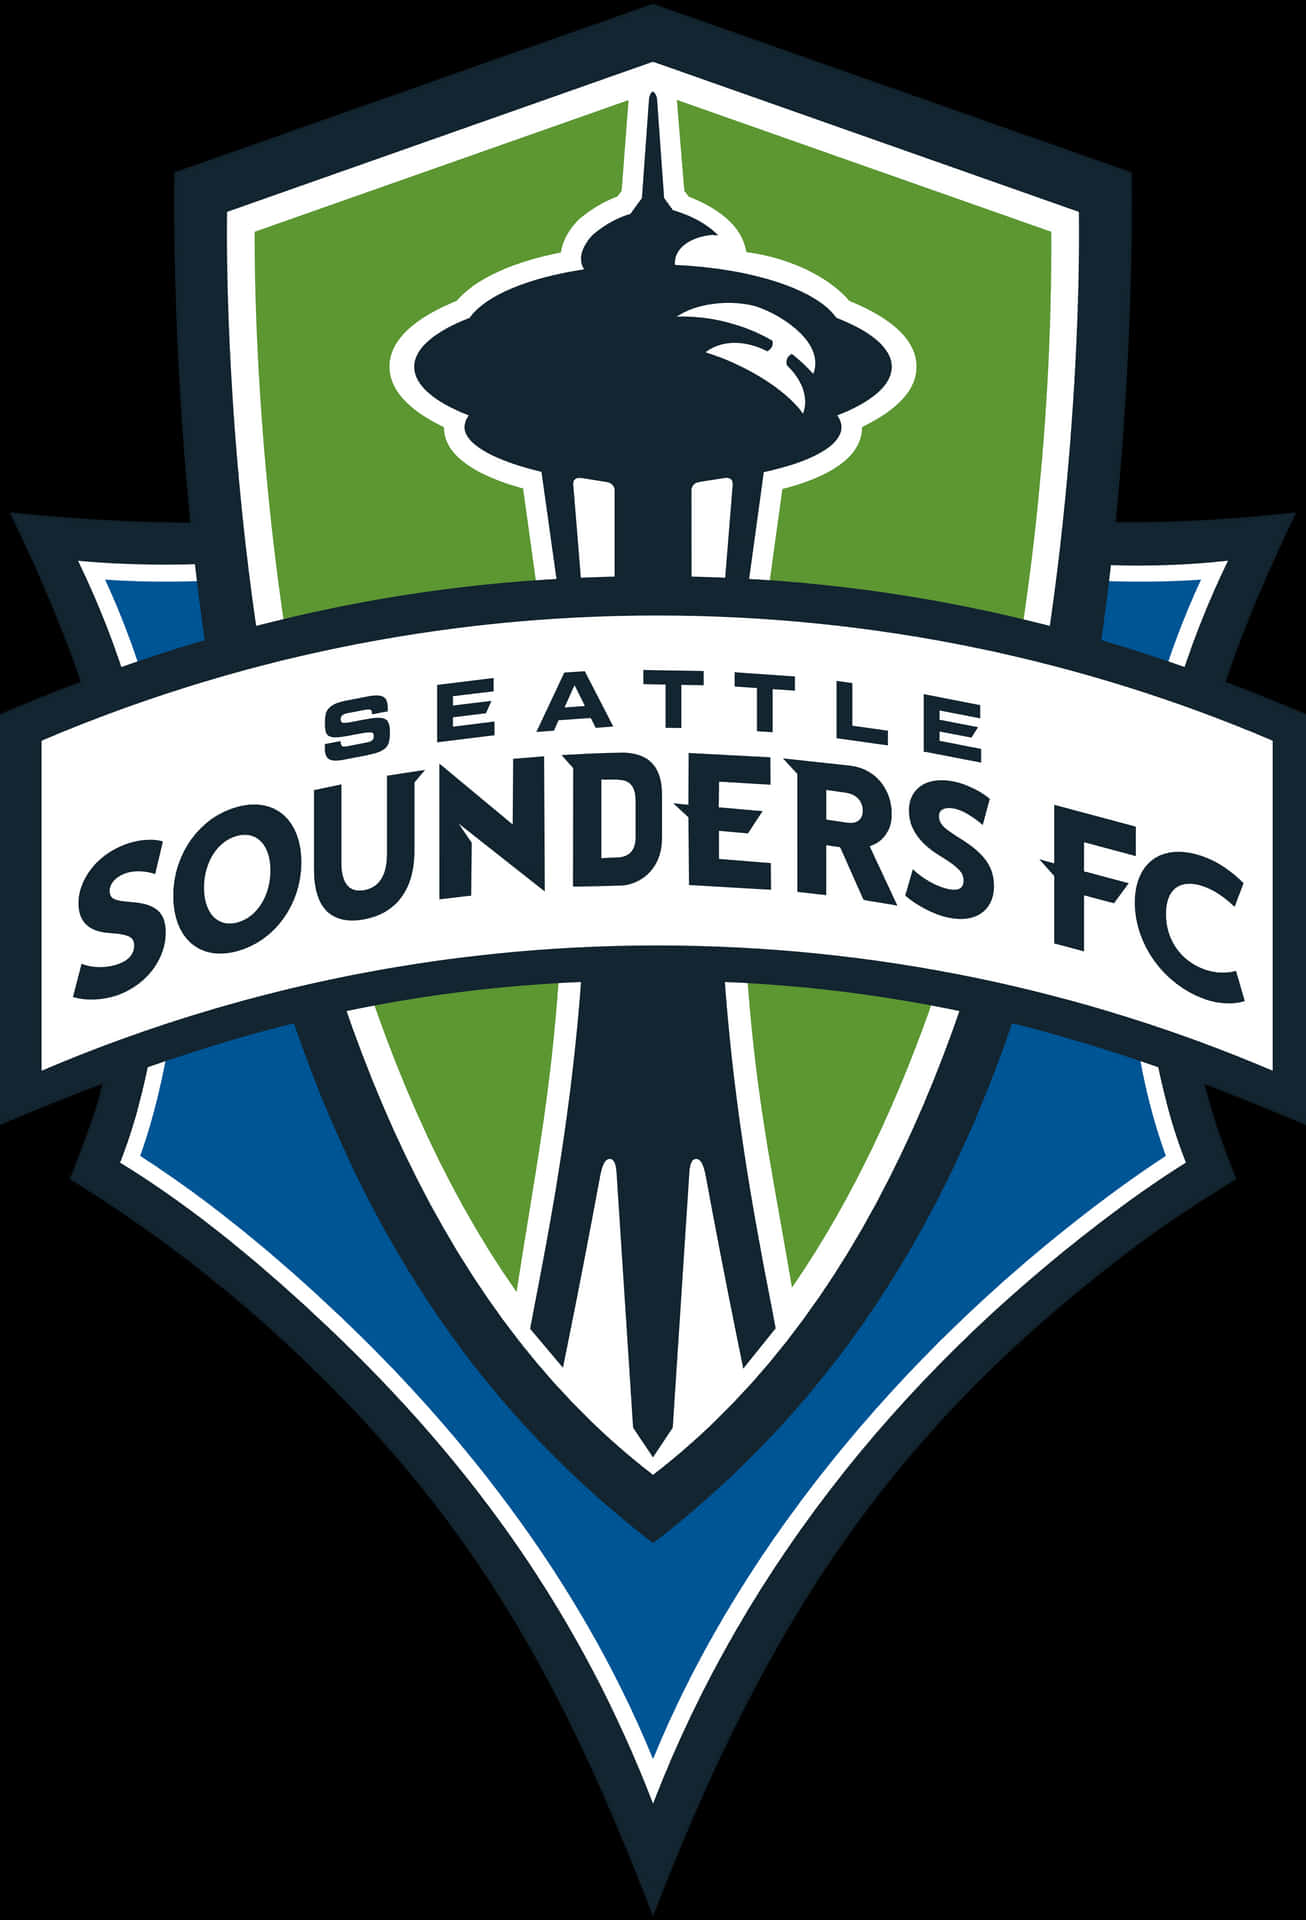 Seattlesounders Fc Club De Fútbol Americano Fondo de pantalla